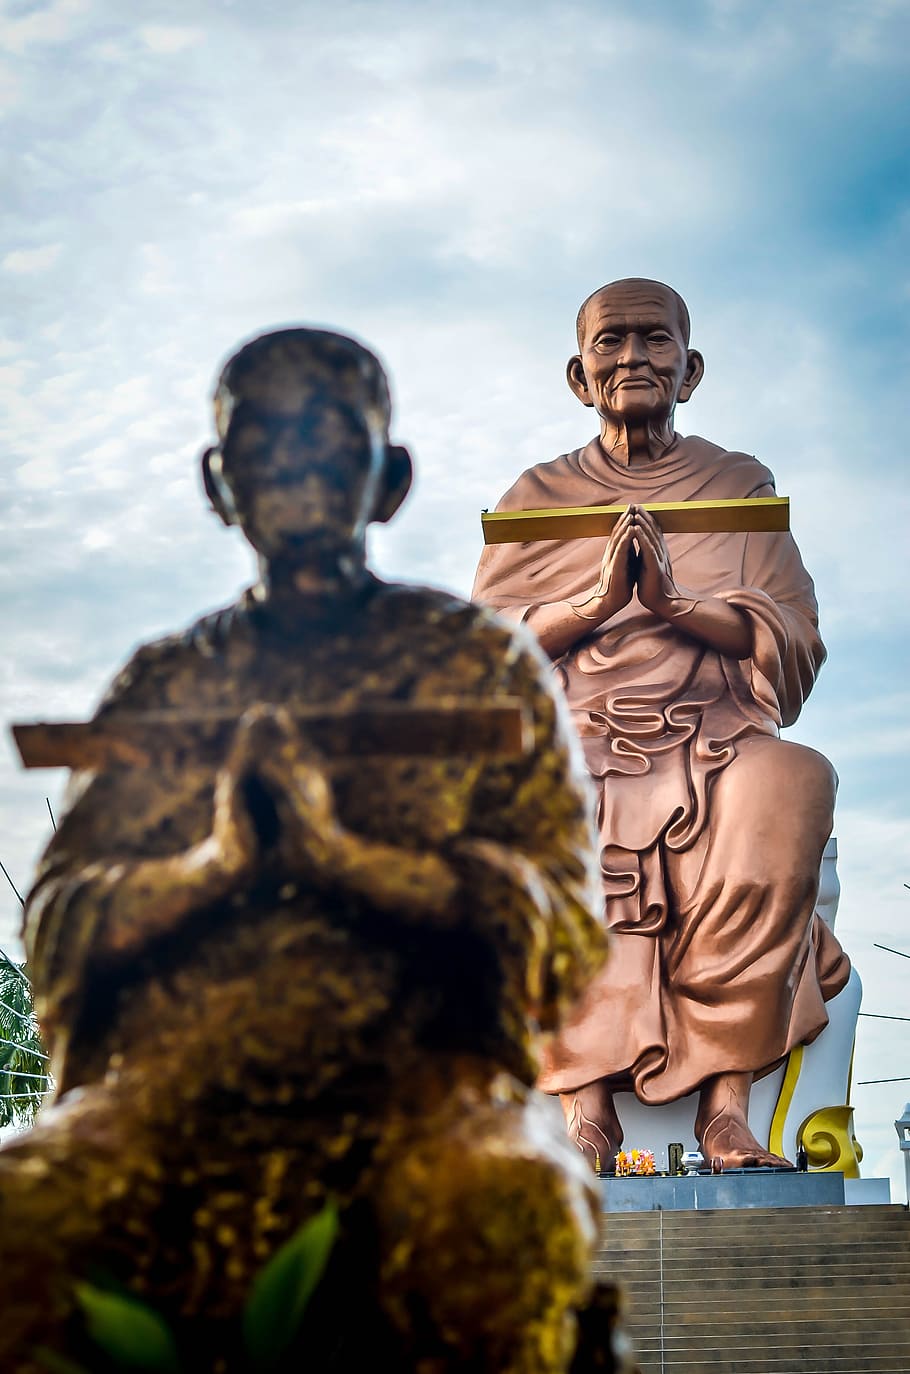 тайский монах, аюдхайя, Таиланд, тайский, монах, буддизм, культура, традиционный, религия, будда